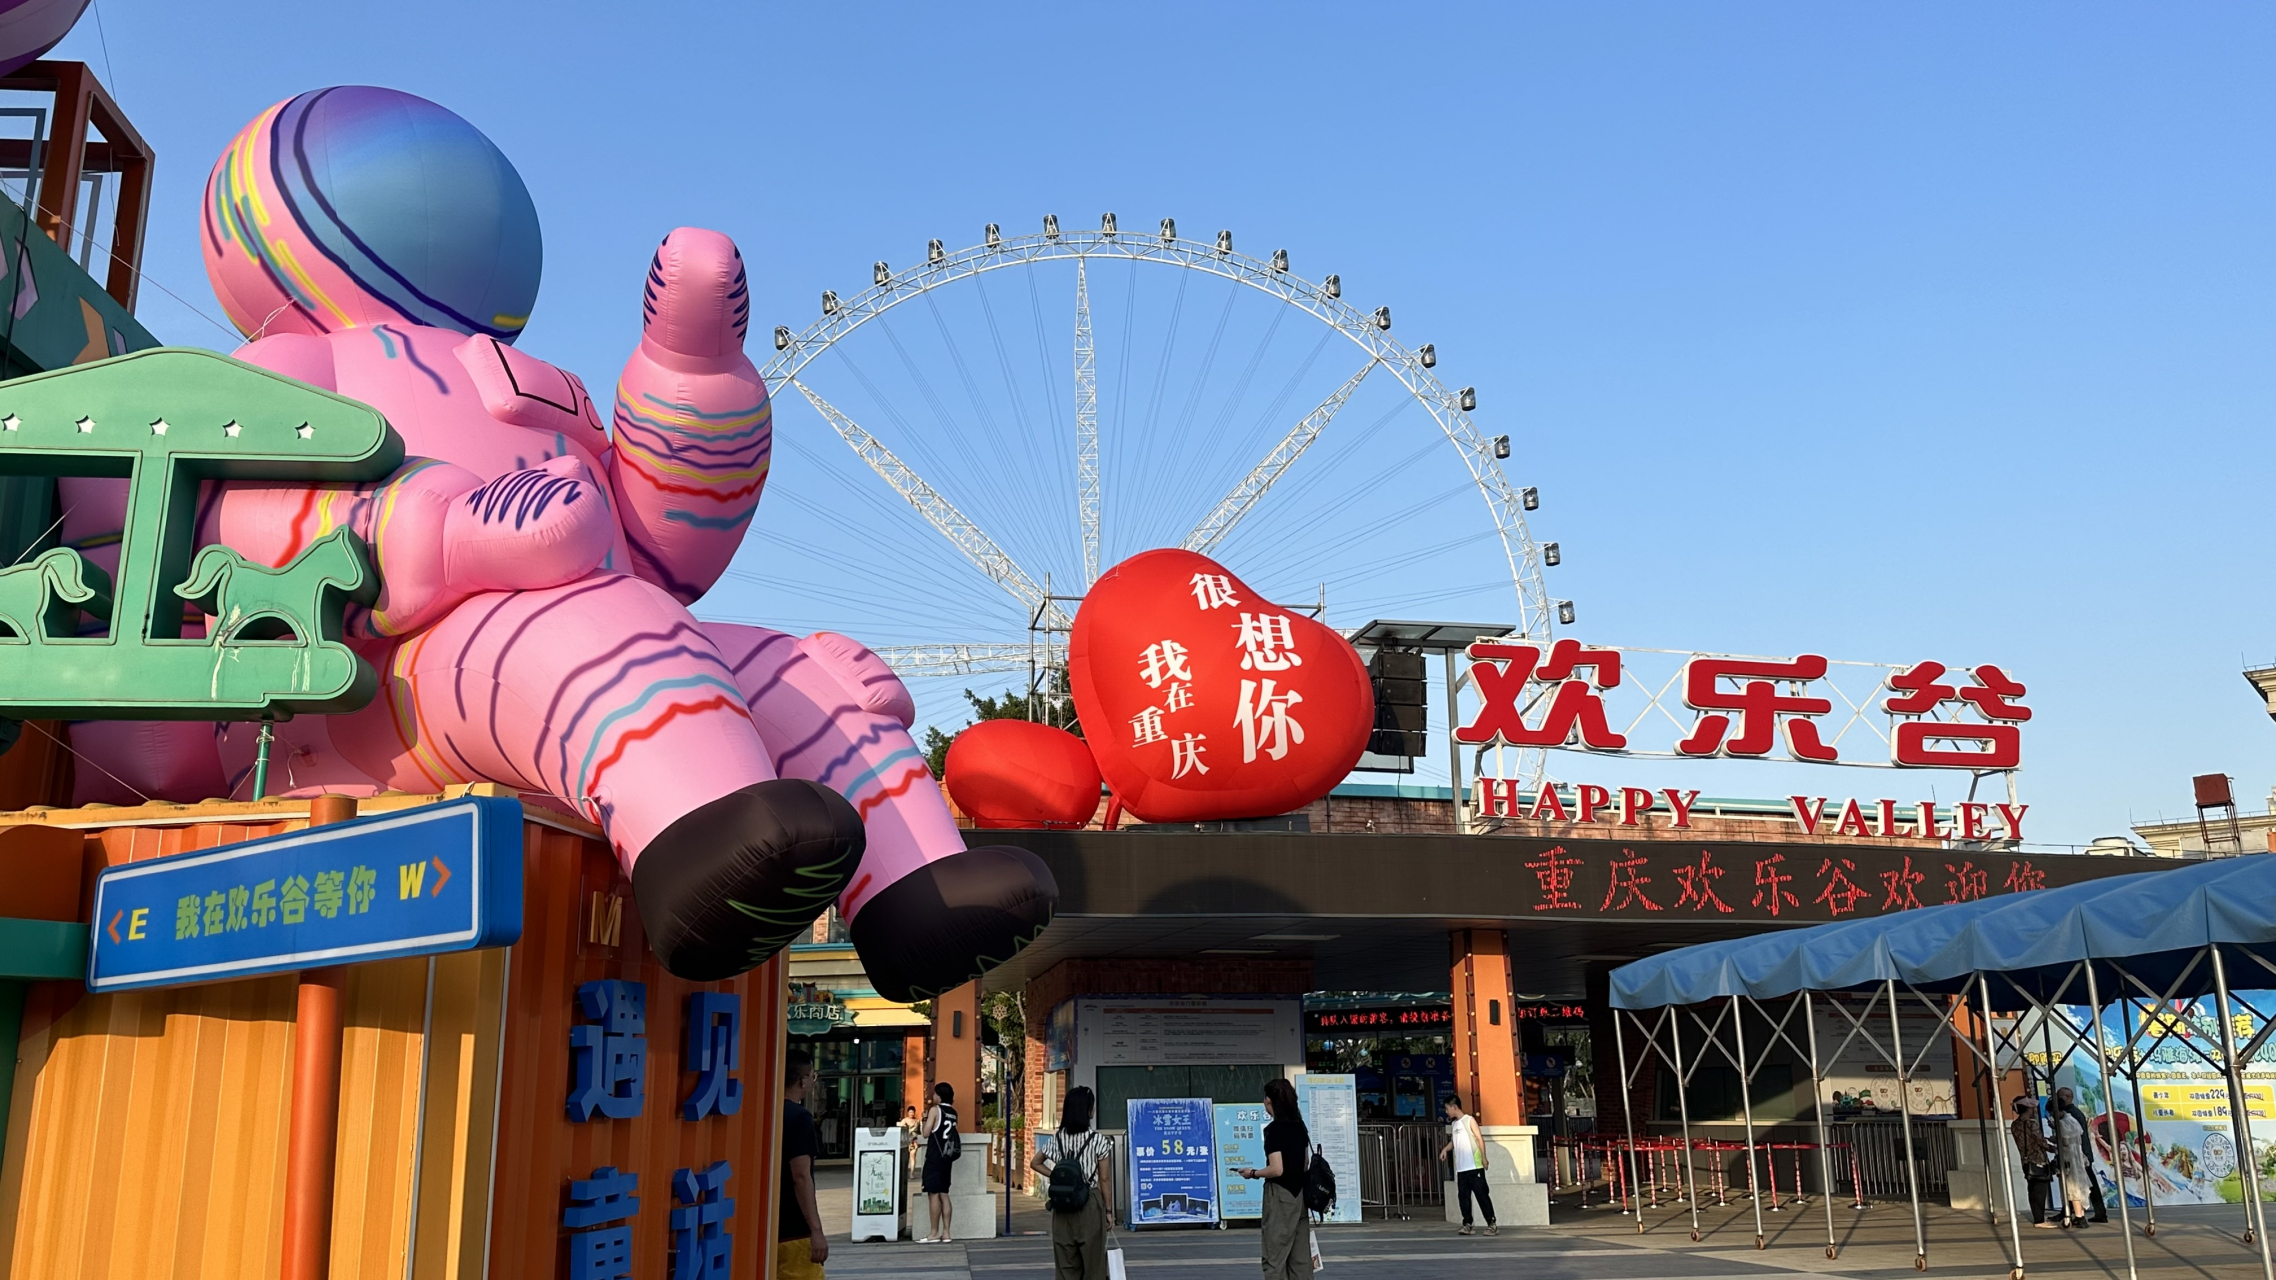 重庆欢乐谷还是可以去玩一玩,项目很多的